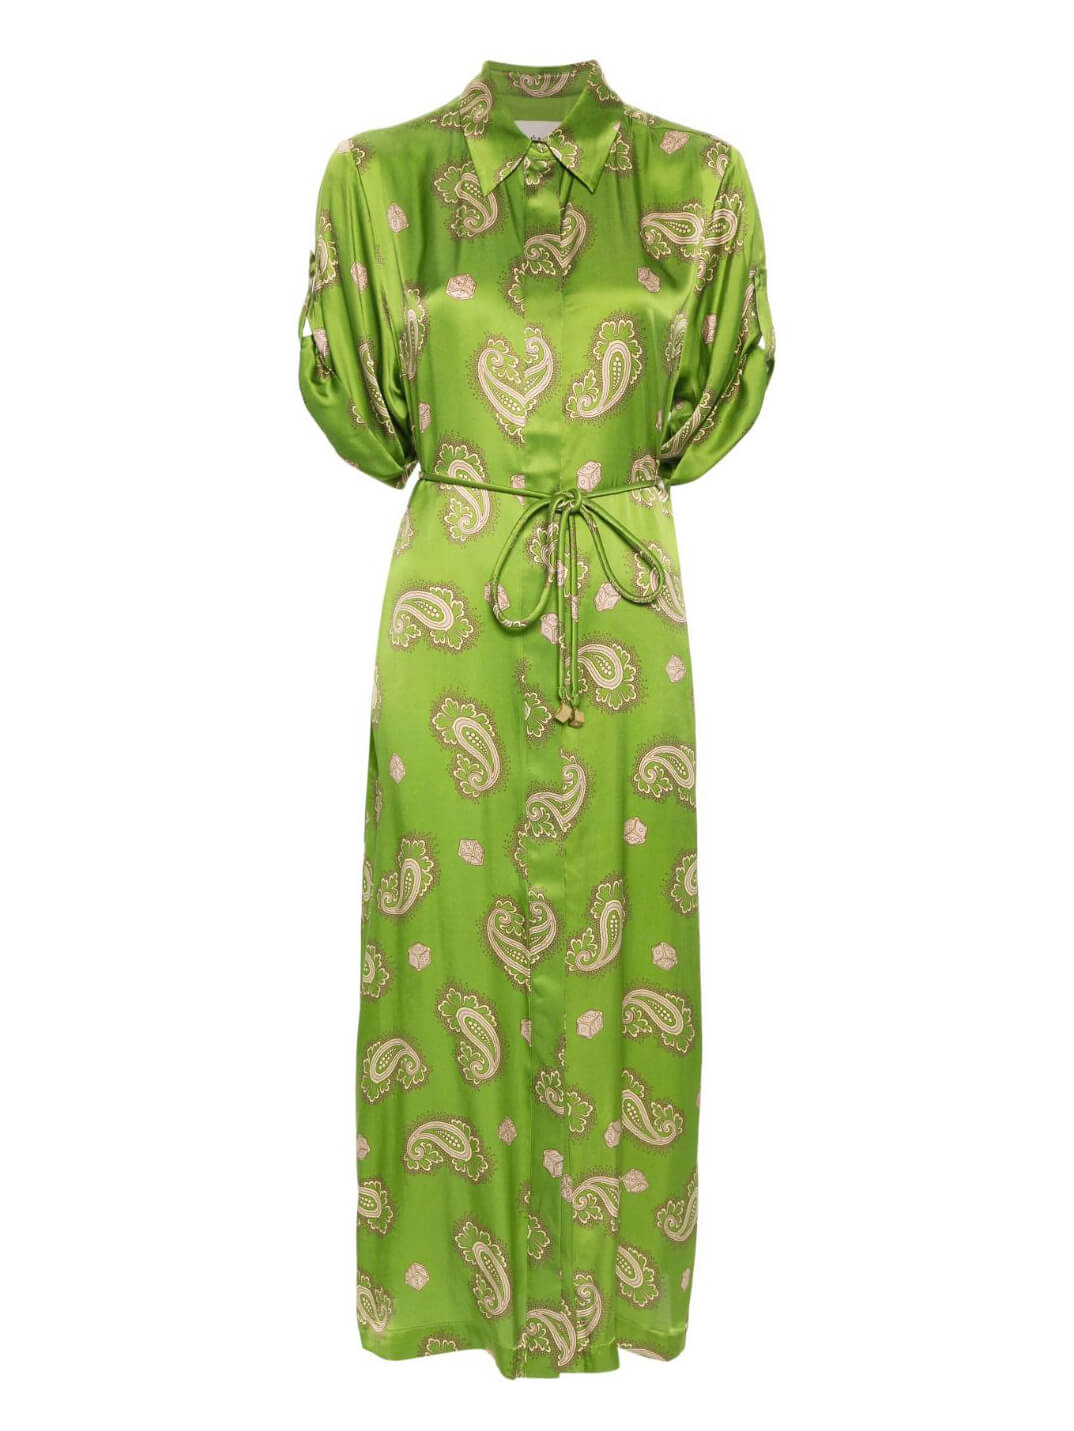 ชุดเดรส Midi Dress ผูกเน็คไทผ้าซาตินลาย Paisley ที่สวยงาม